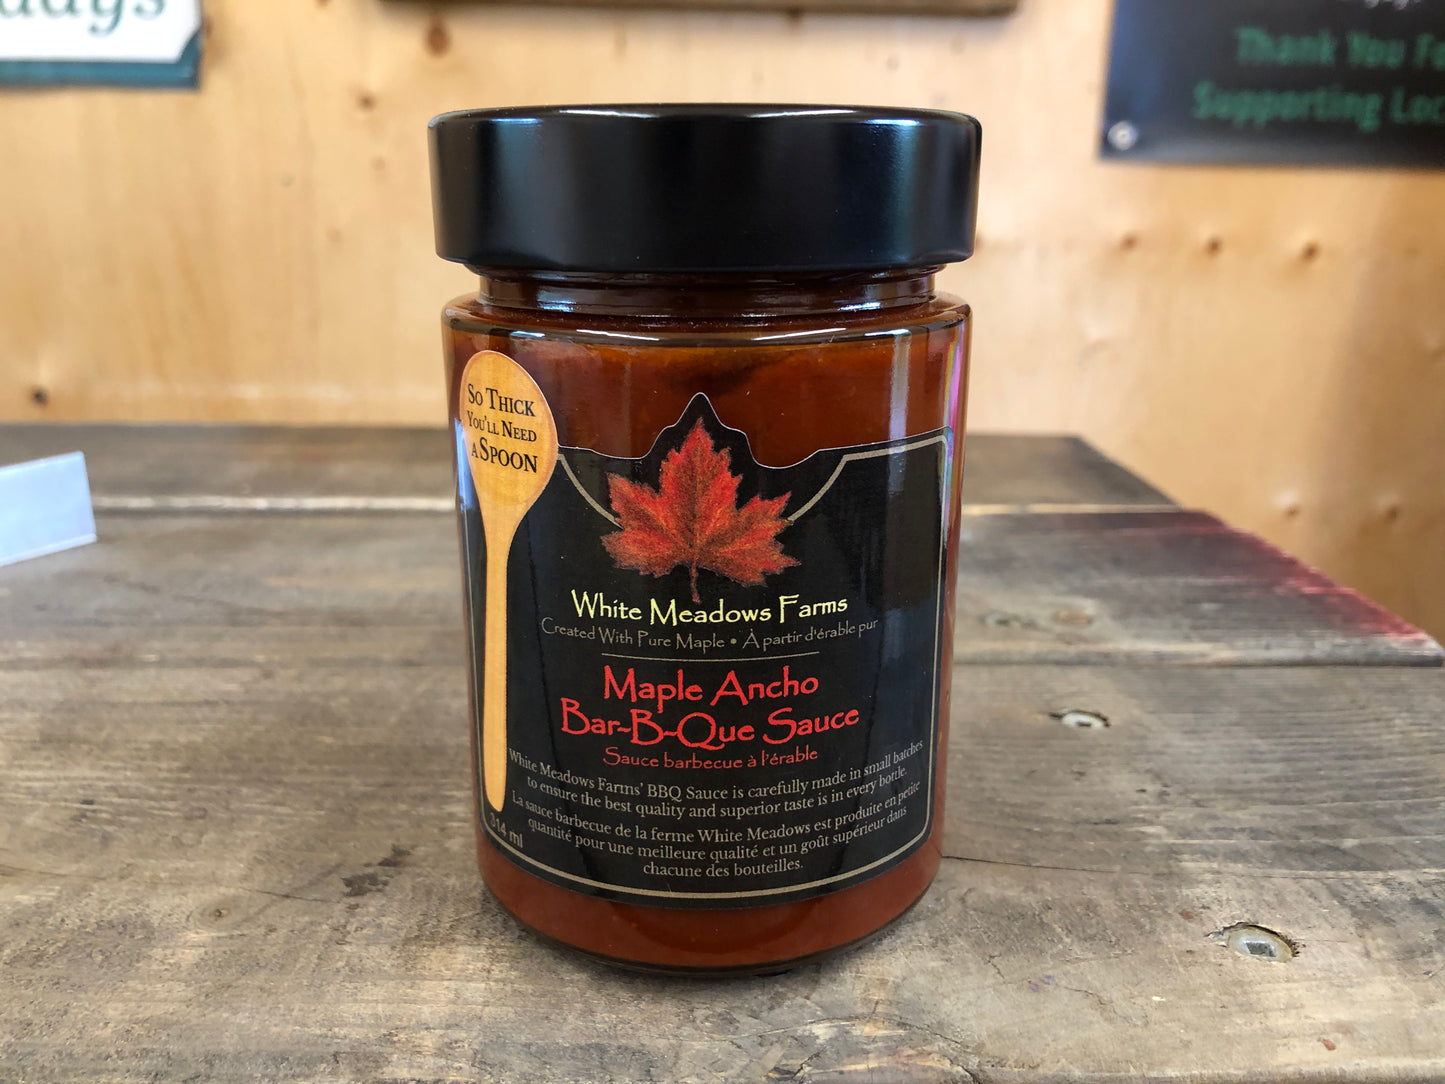 Maple Ancho Bar-B-Que Sauce